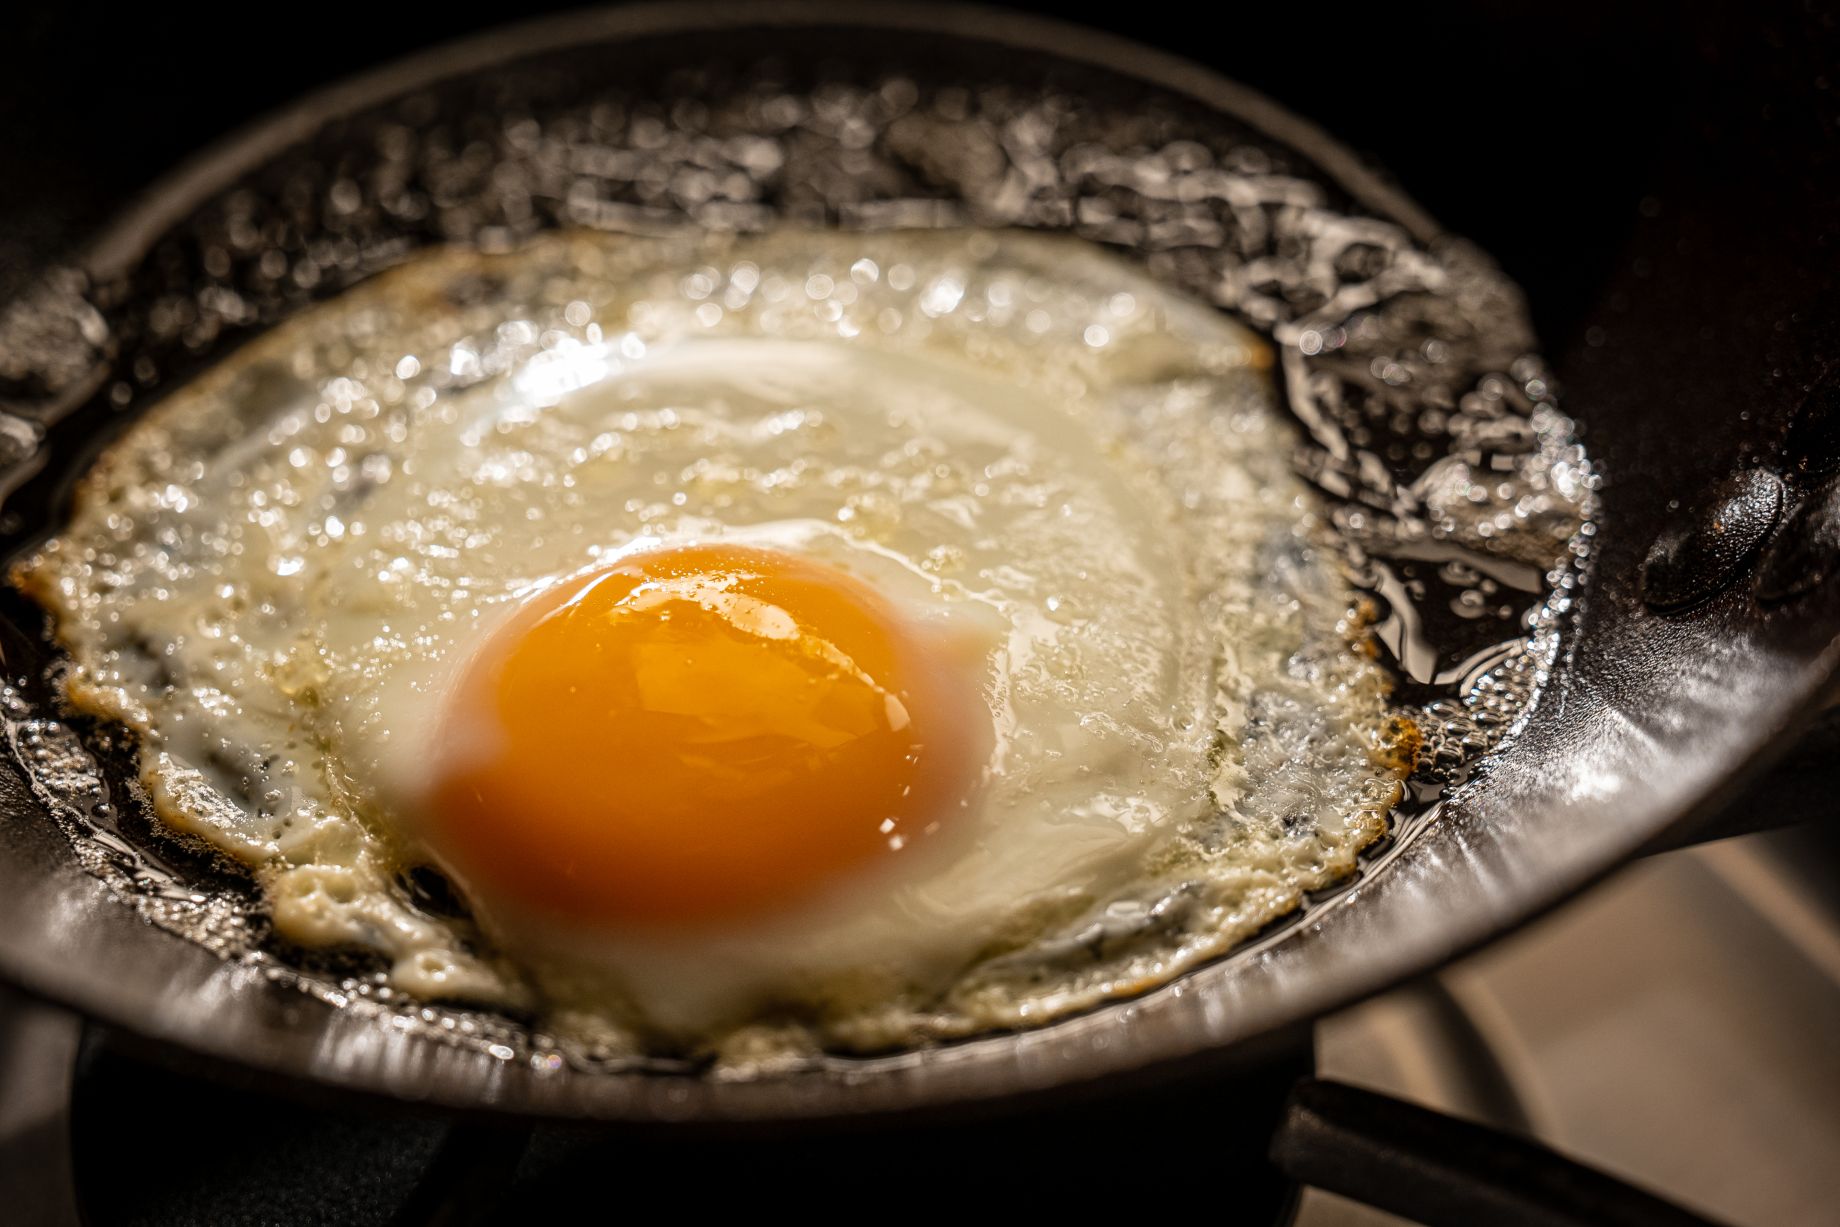 https://altonbrown.com/wp-content/uploads/2020/08/The-Final-Fried-Eggs_RecipeImage.jpg